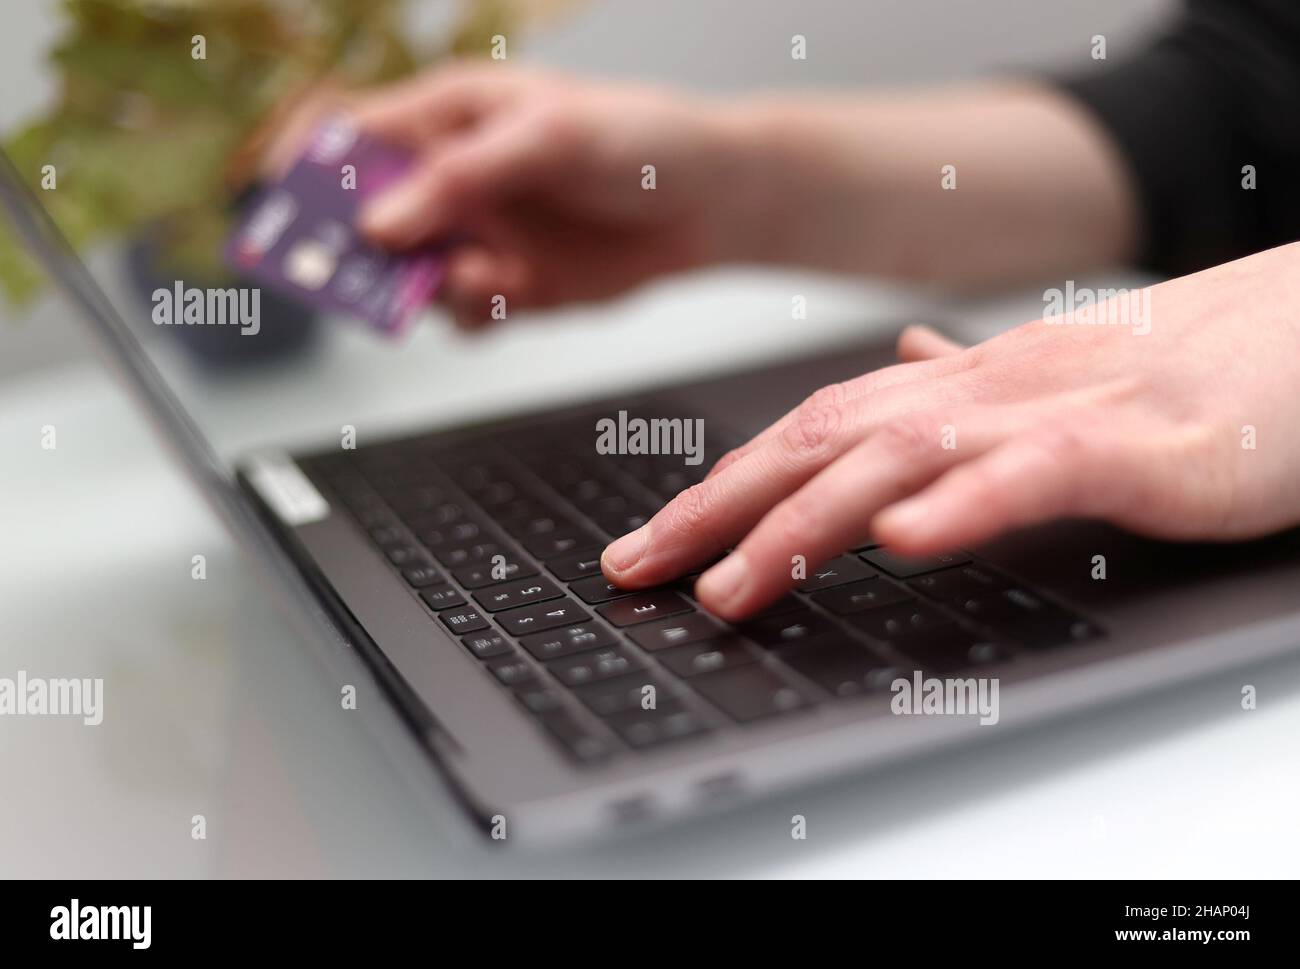 Foto vom 16/09/21 einer Person, die einen Laptop benutzt. Laut einer Umfrage ist das Leben der irischen Bevölkerung digitaler geworden, und mehr Menschen greifen täglich häufiger auf das Internet zu. Stockfoto